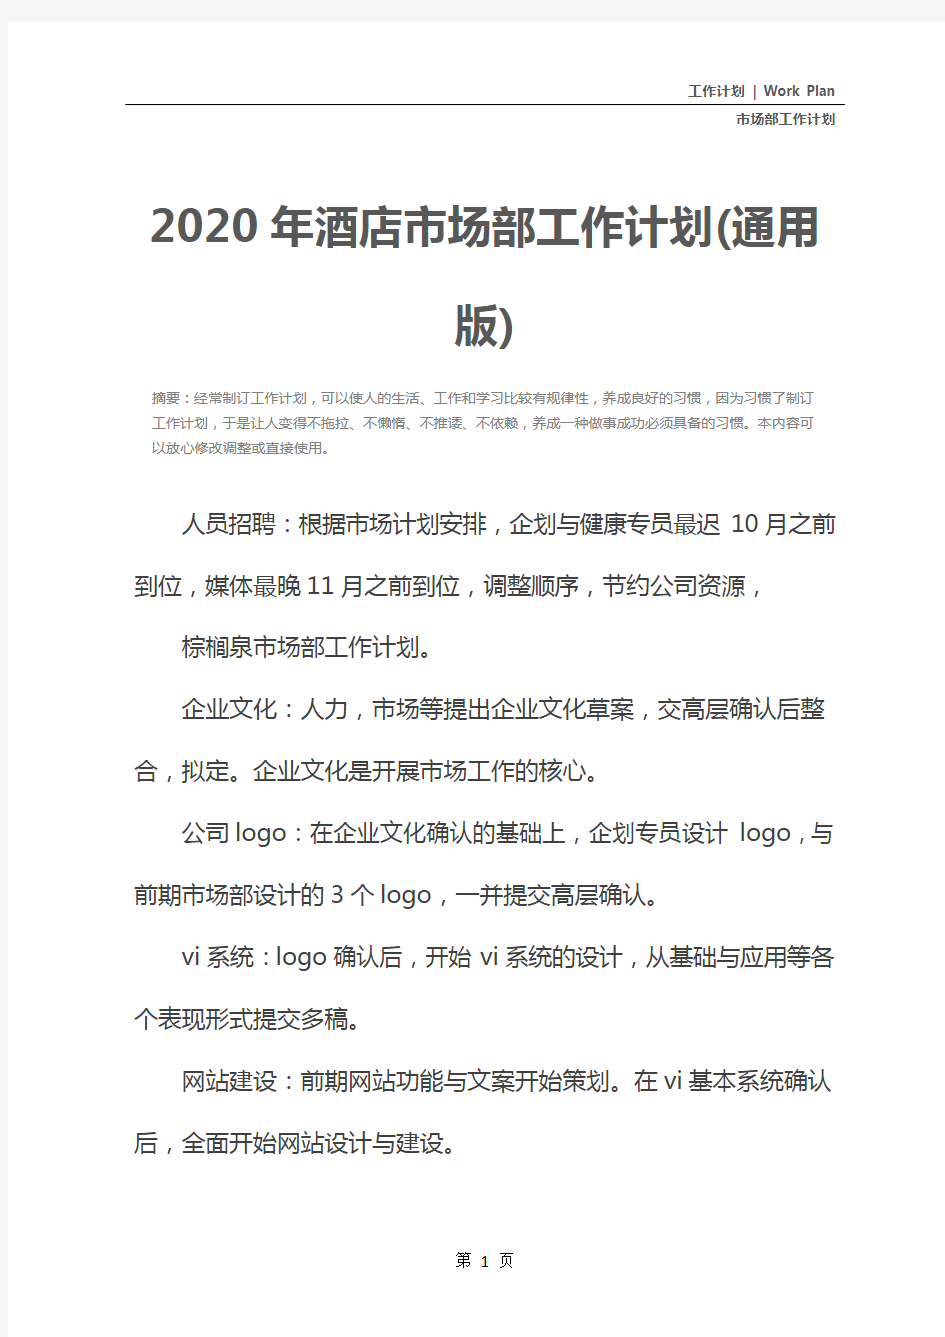 2020年酒店市场部工作计划(通用版)